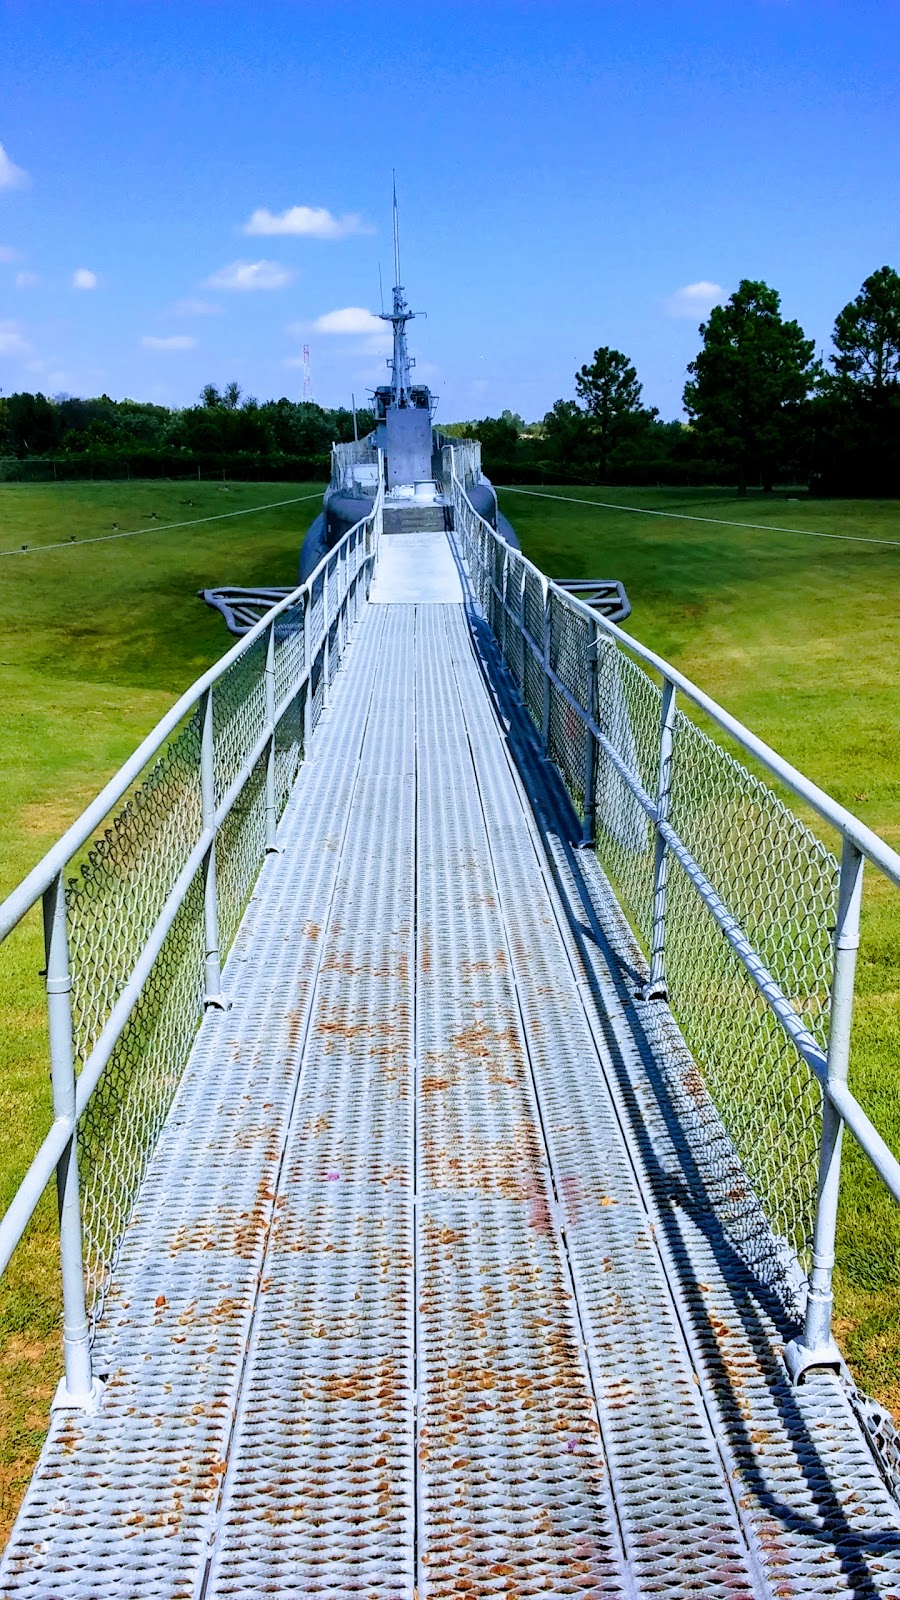 Muskogee War Memorial Park: Home of the USS Batfish | 3500 Batfish Rd, Muskogee, OK 74403, USA | Phone: (918) 682-6294